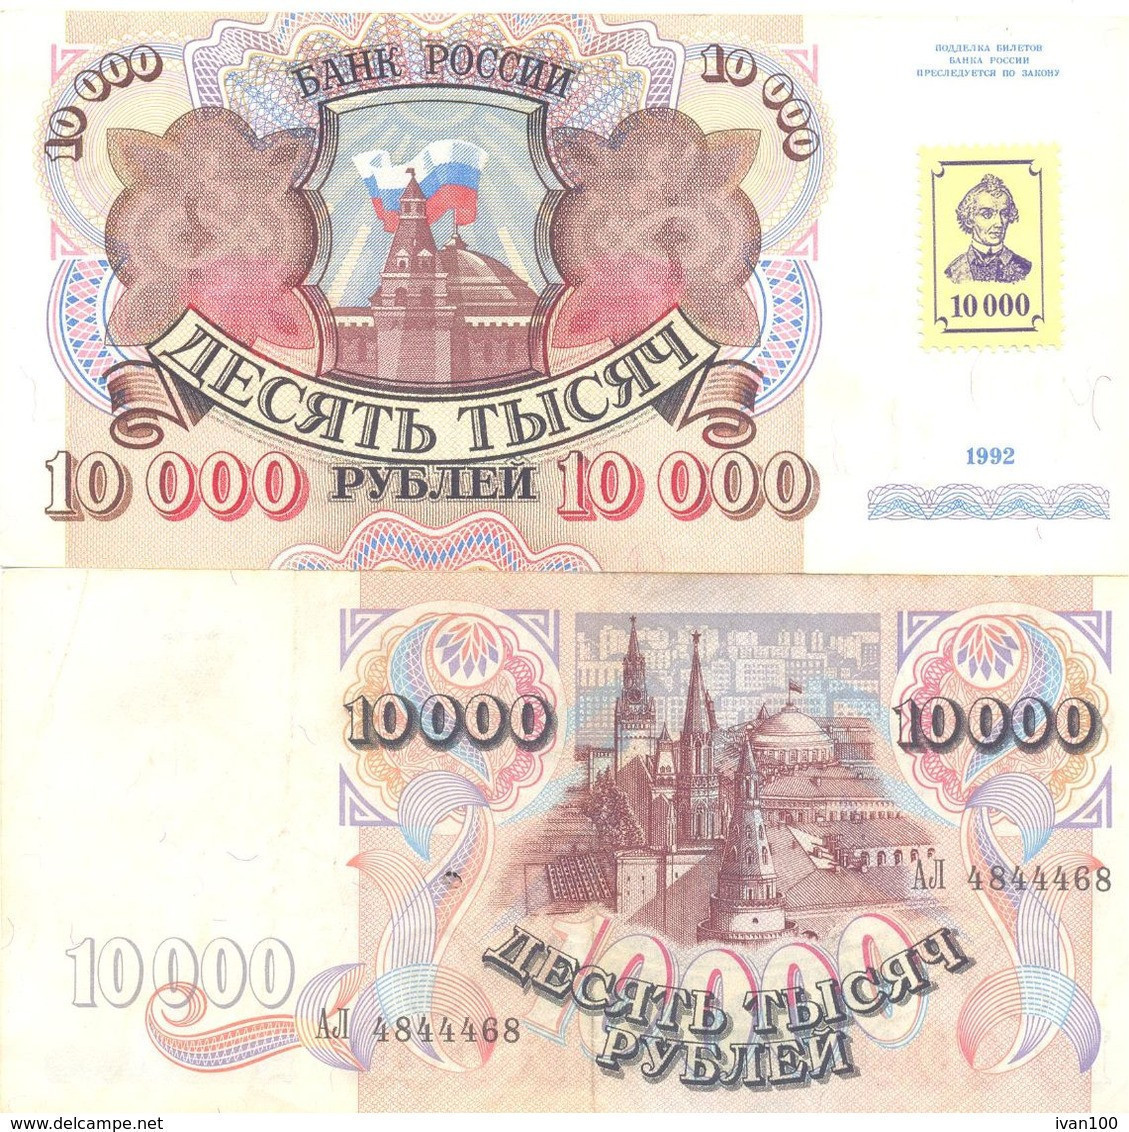 Transnistria, 10000Rub, 1994 - Old Date 1992, P-15, VF - Moldova